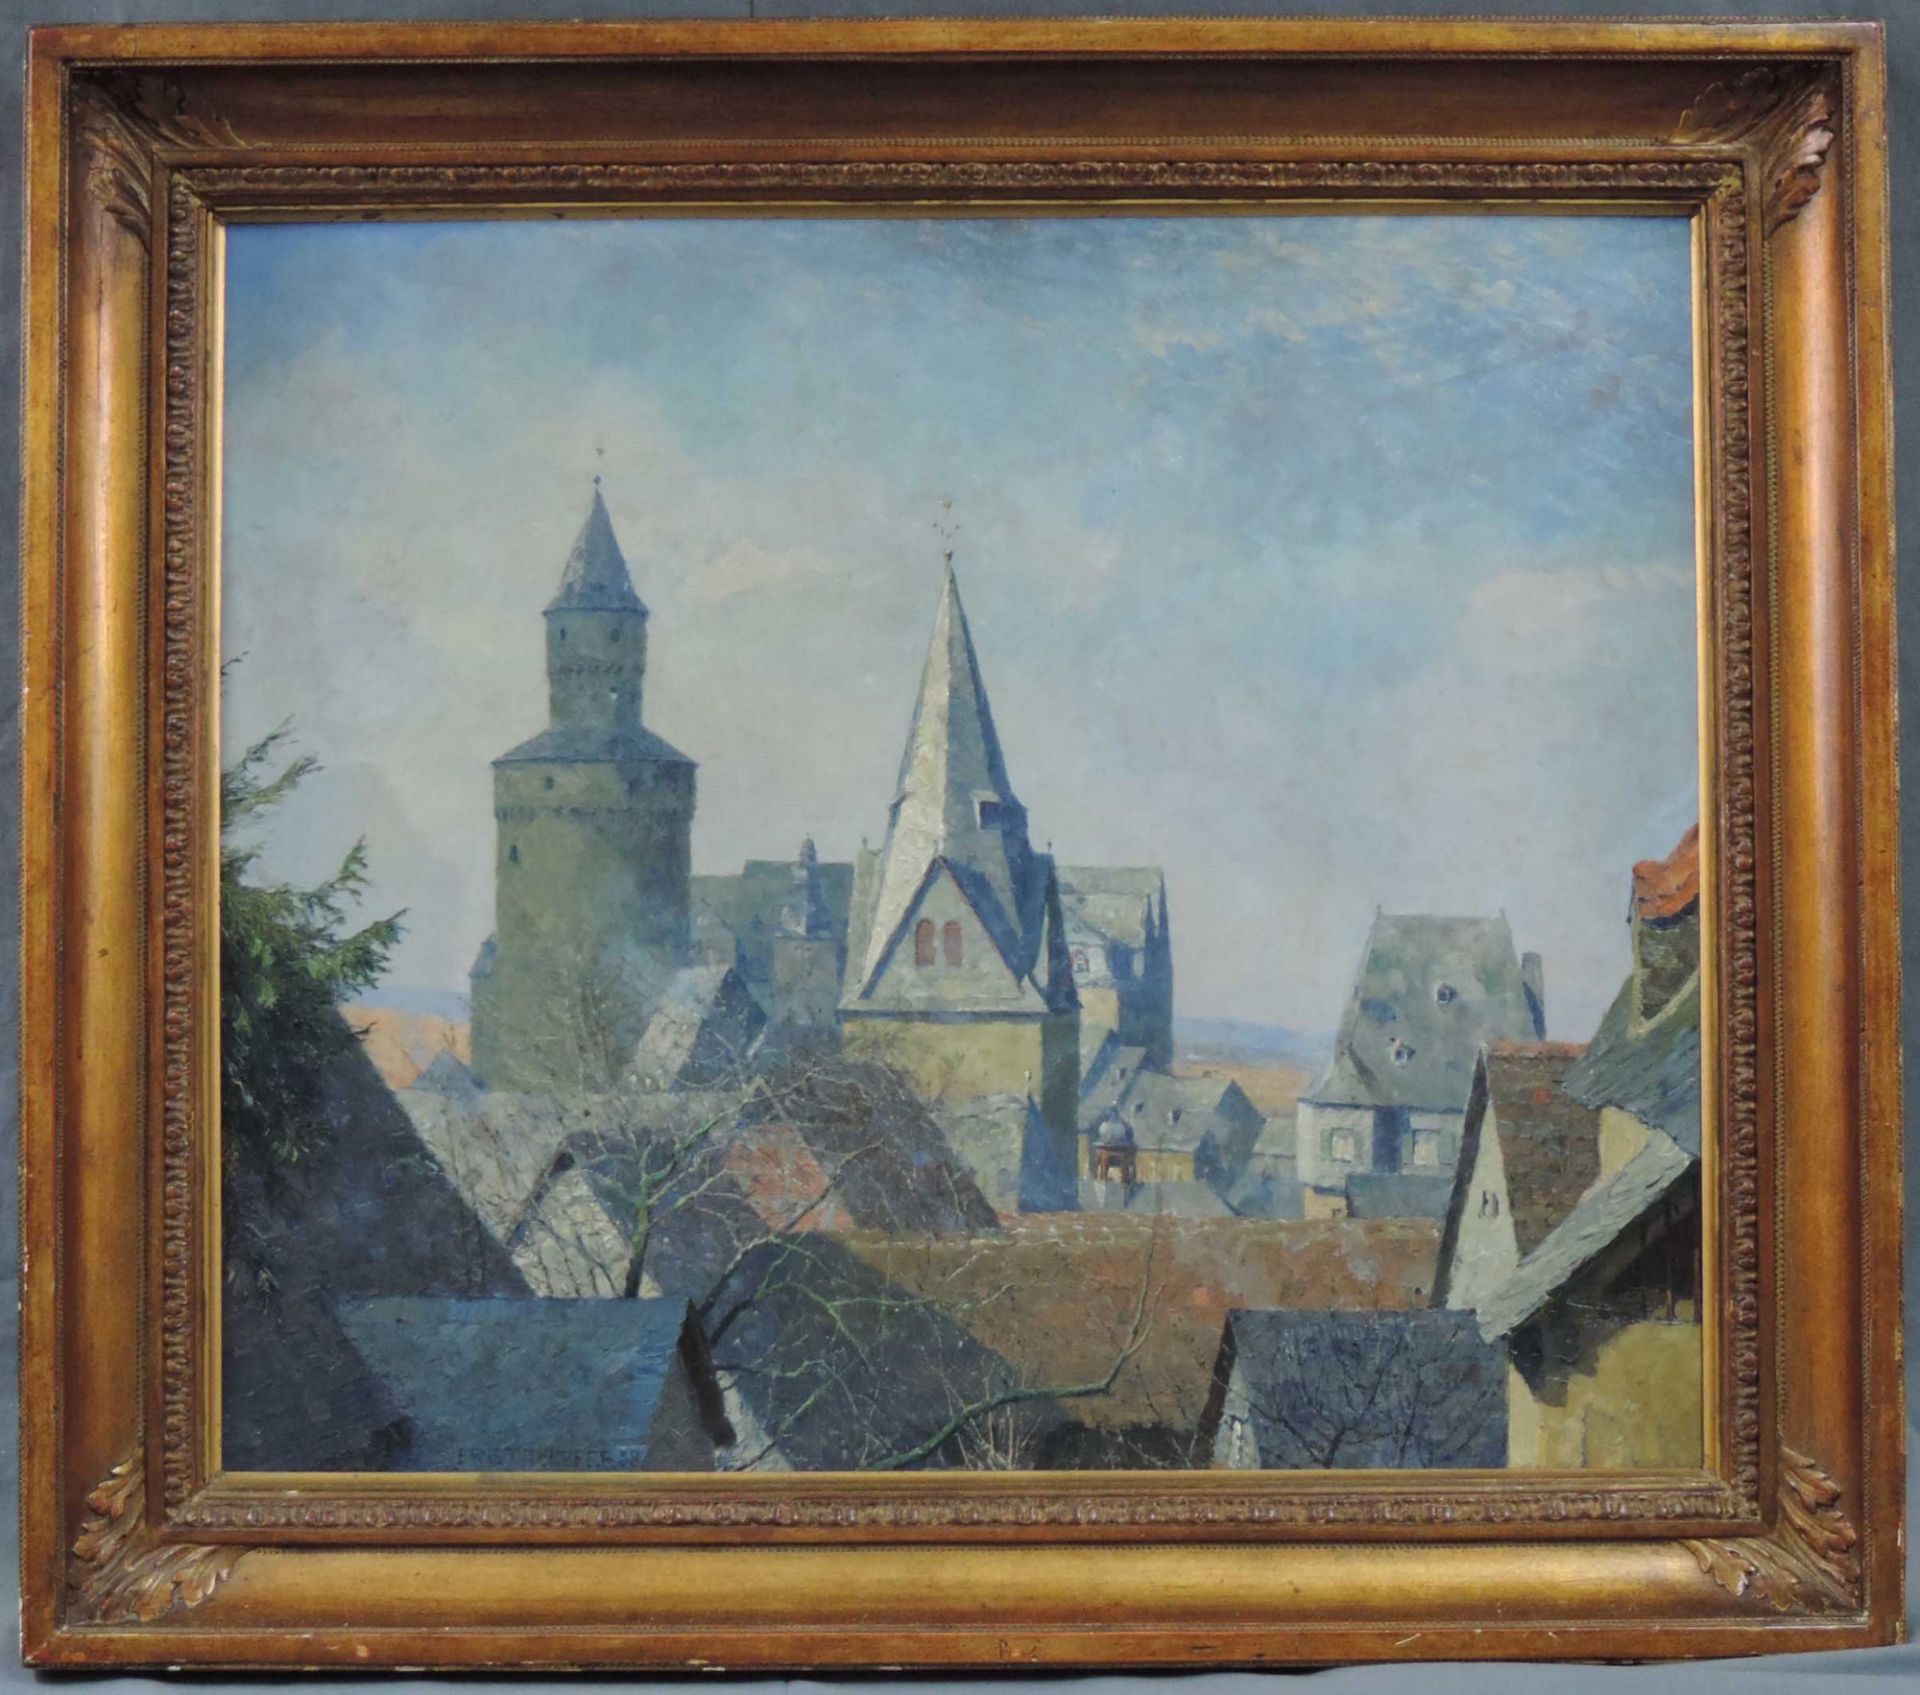 Ernst TOEPFER (1877 - 1955). Idstein im Taunus. Altstadt mit Hexenturm, 193860 cm x 70 cm. - Bild 3 aus 10